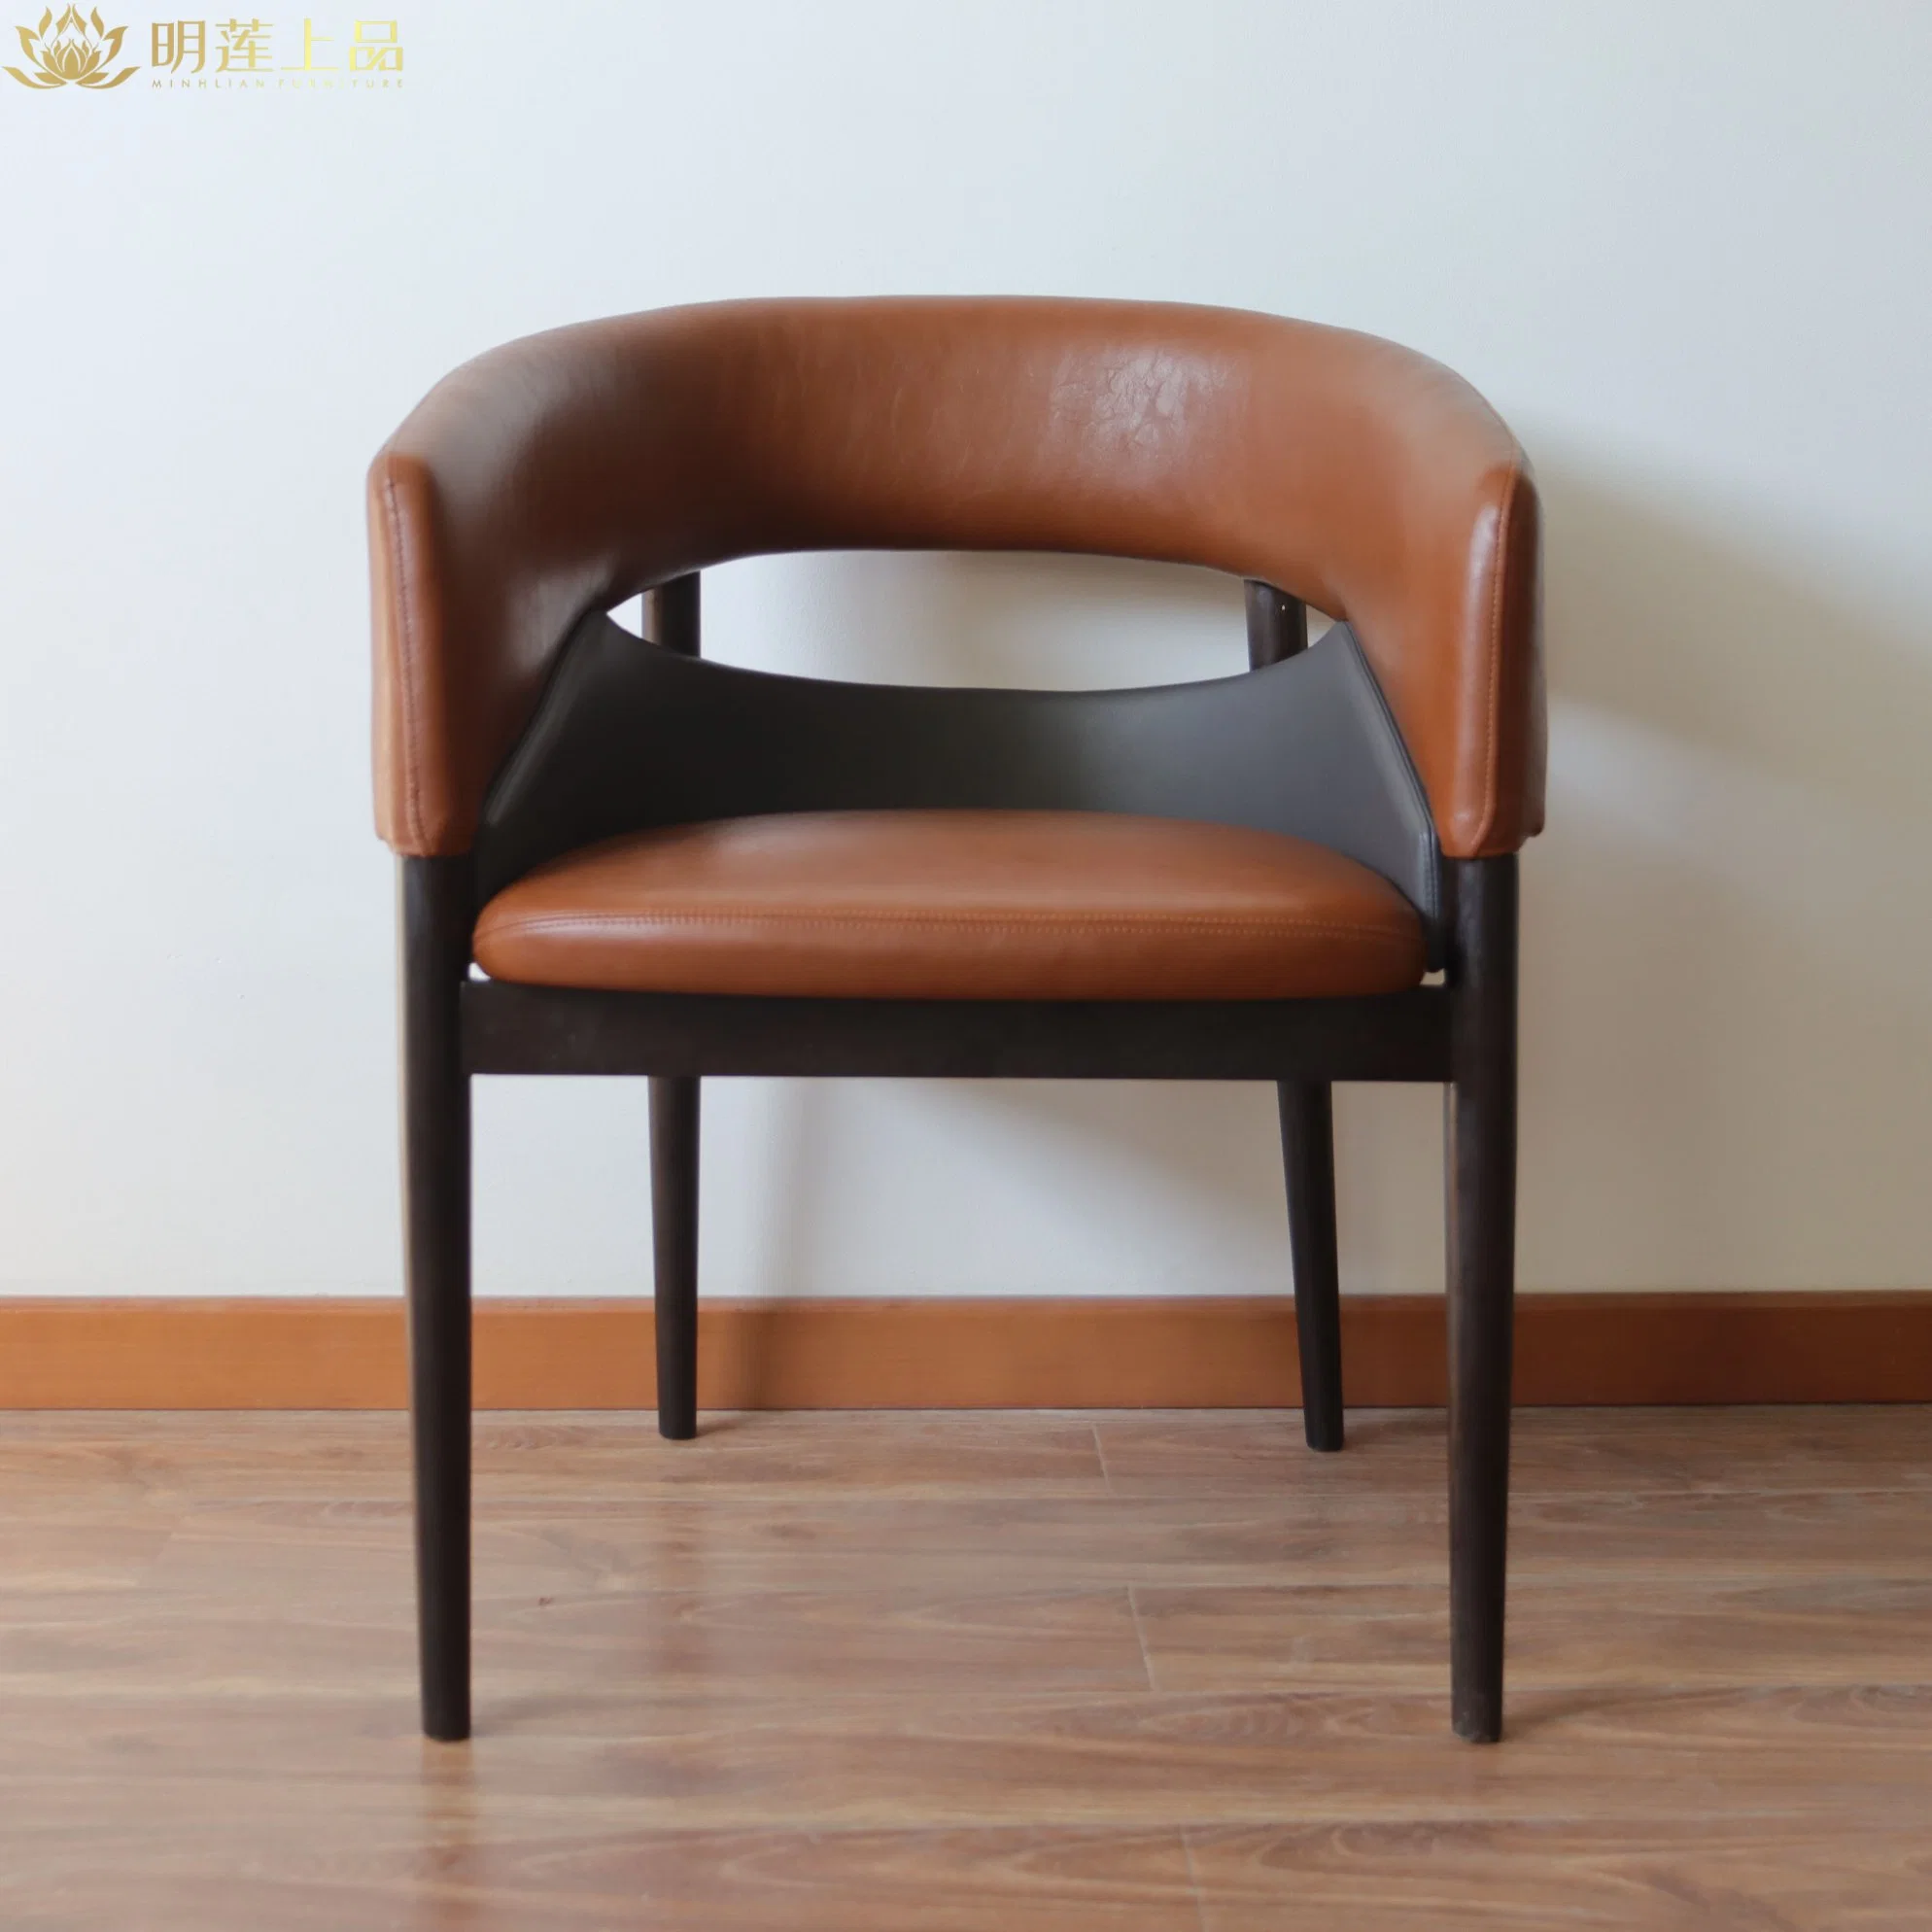 Современный дизайн Древесная стульчик микрофиленая кожа Мягкая Ресторан Стул Деревянный стул для отдыха